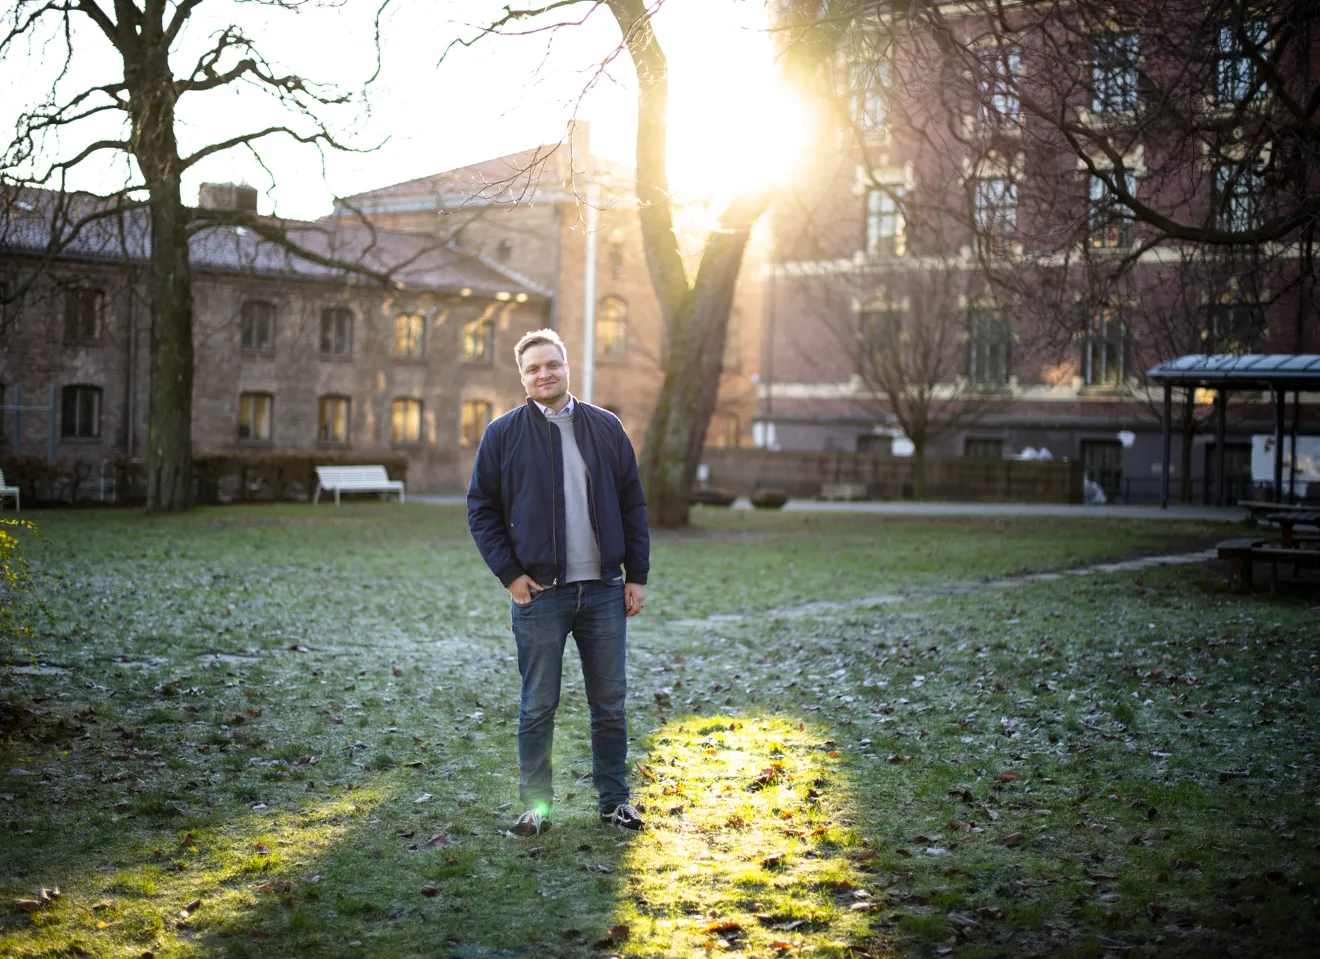 Håvard Solheim står foran et tre i en liten park foran noen byggninger